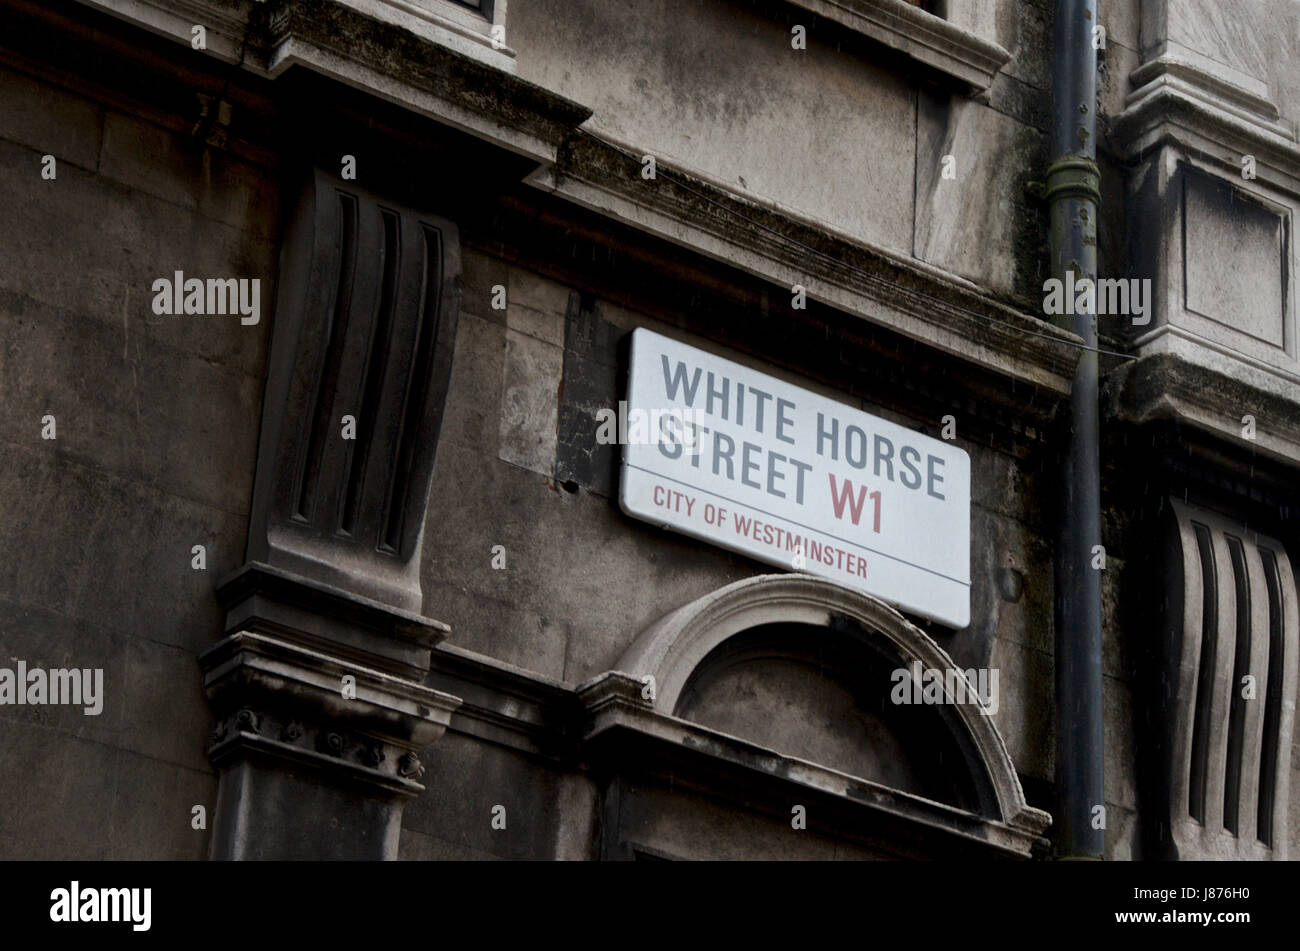 Una strada di Londra segno, White Horse Street W1 su una sporca edificio londinese. Foto Stock